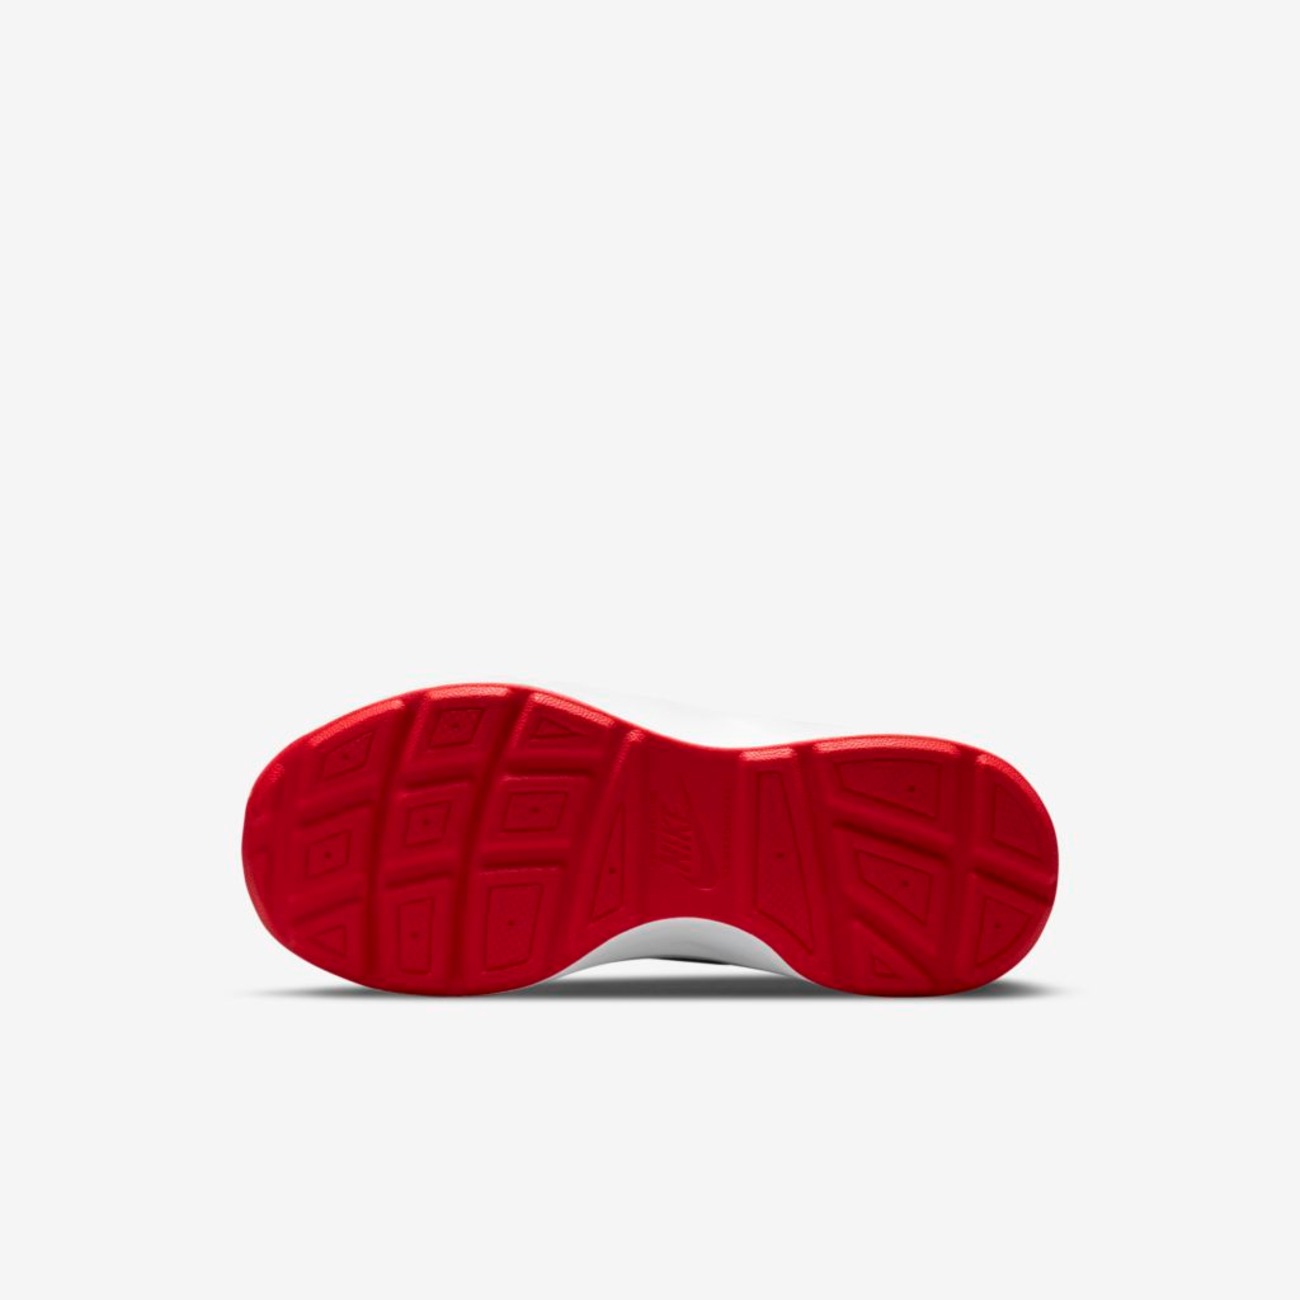 Tênis Nike Wear AllDay Infantil - Foto 2